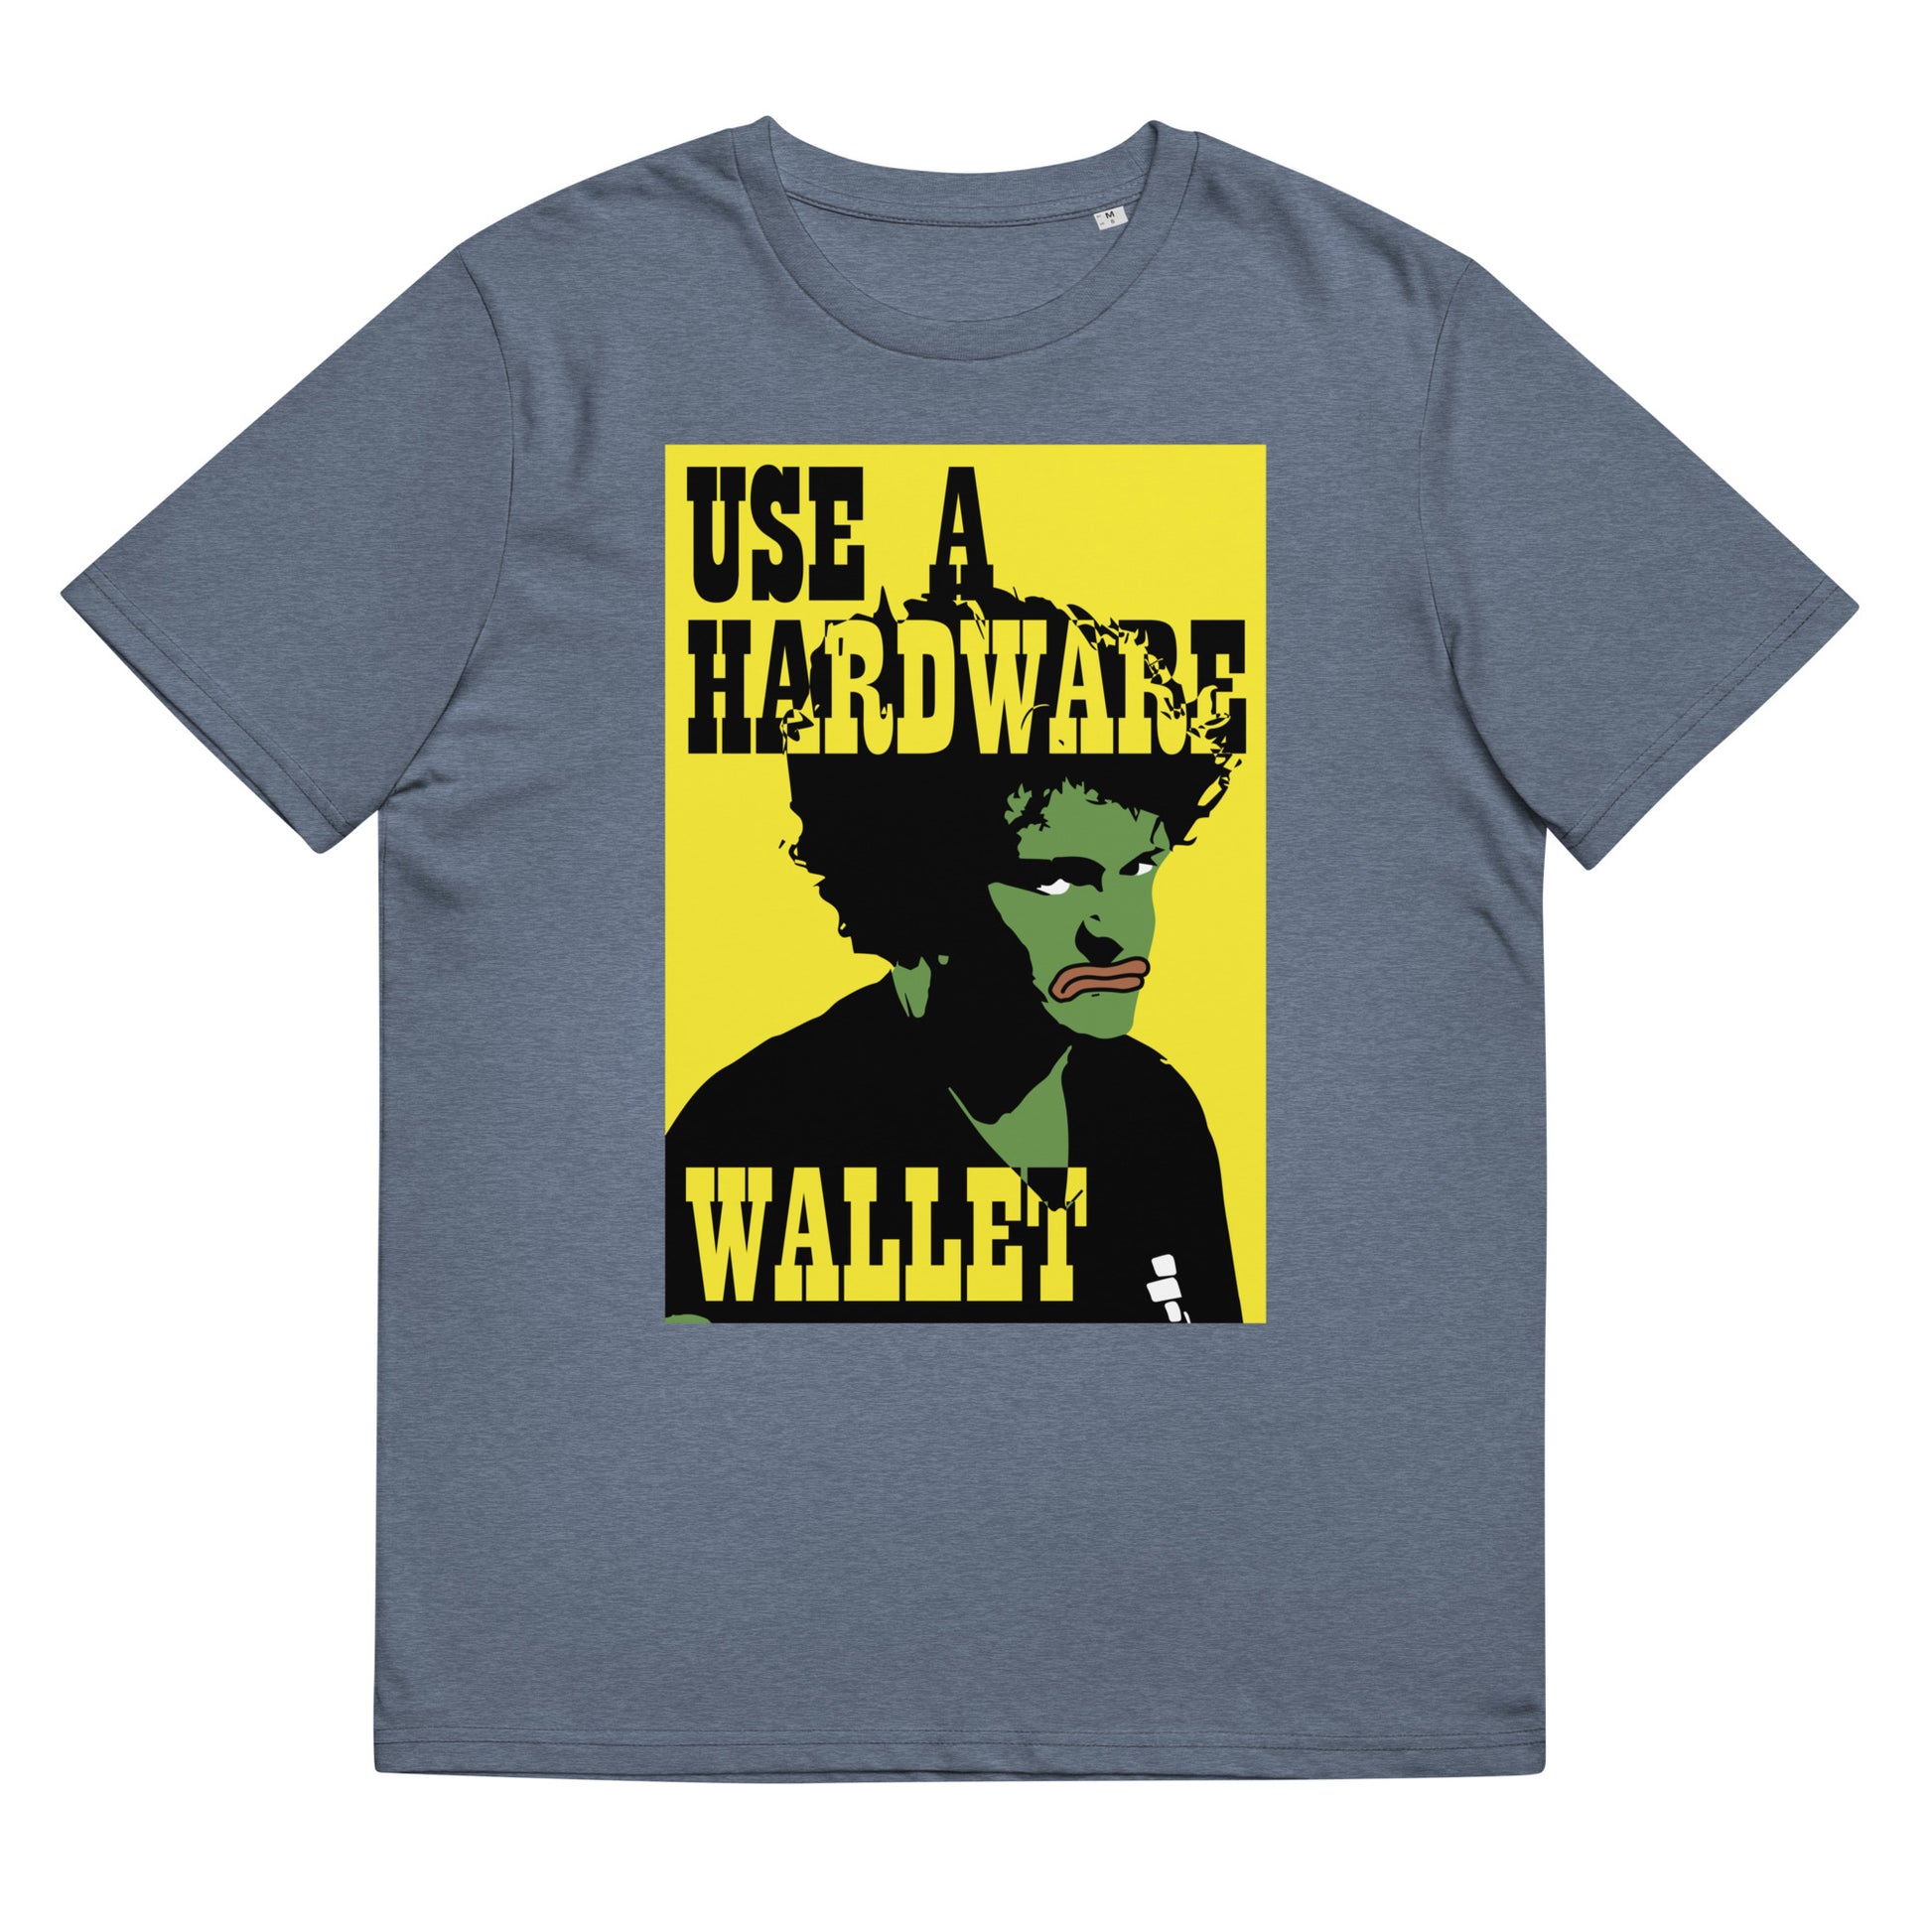 use-hardware-wallet-t-shirt-dark-heather-blue